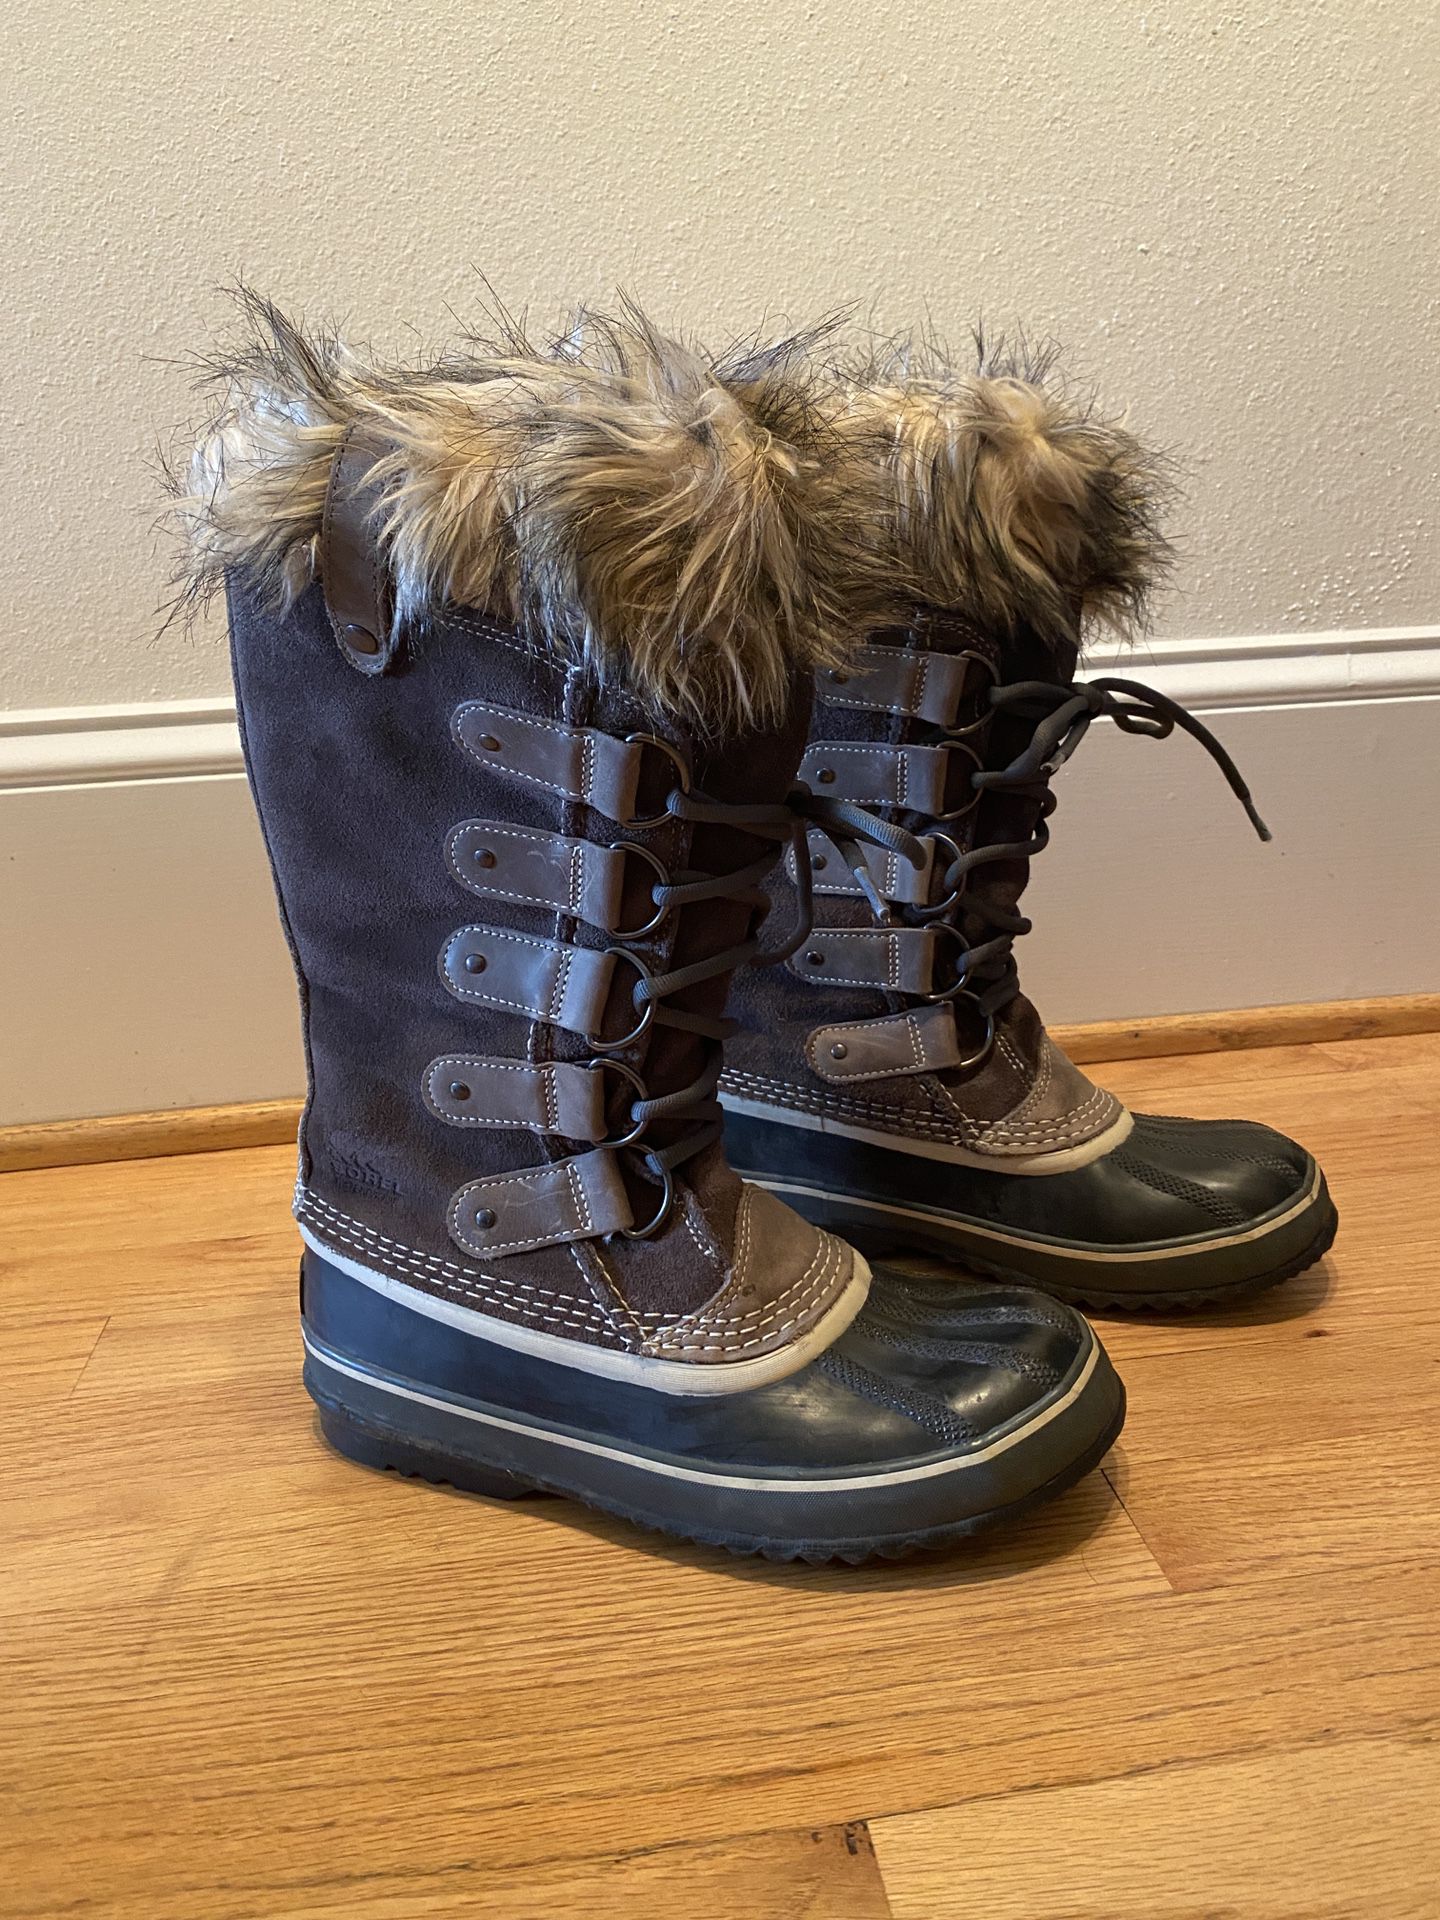 Waterproof Sorel Snow Boots